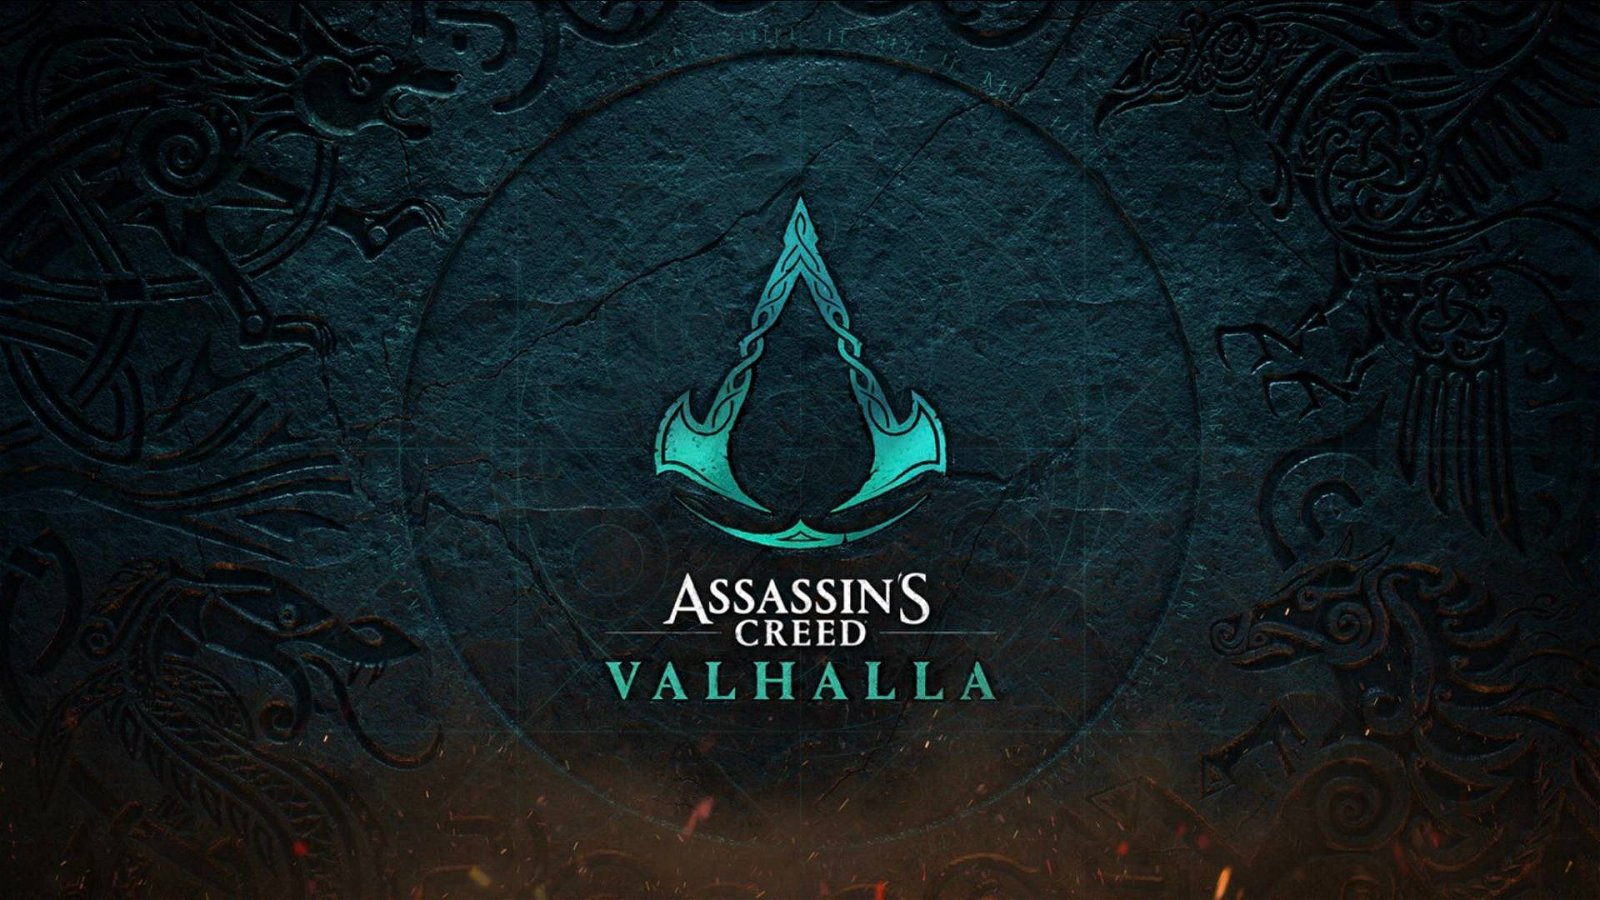 Immagine di Assassin's Creed Valhalla invaso da bambini giganti, il motivo